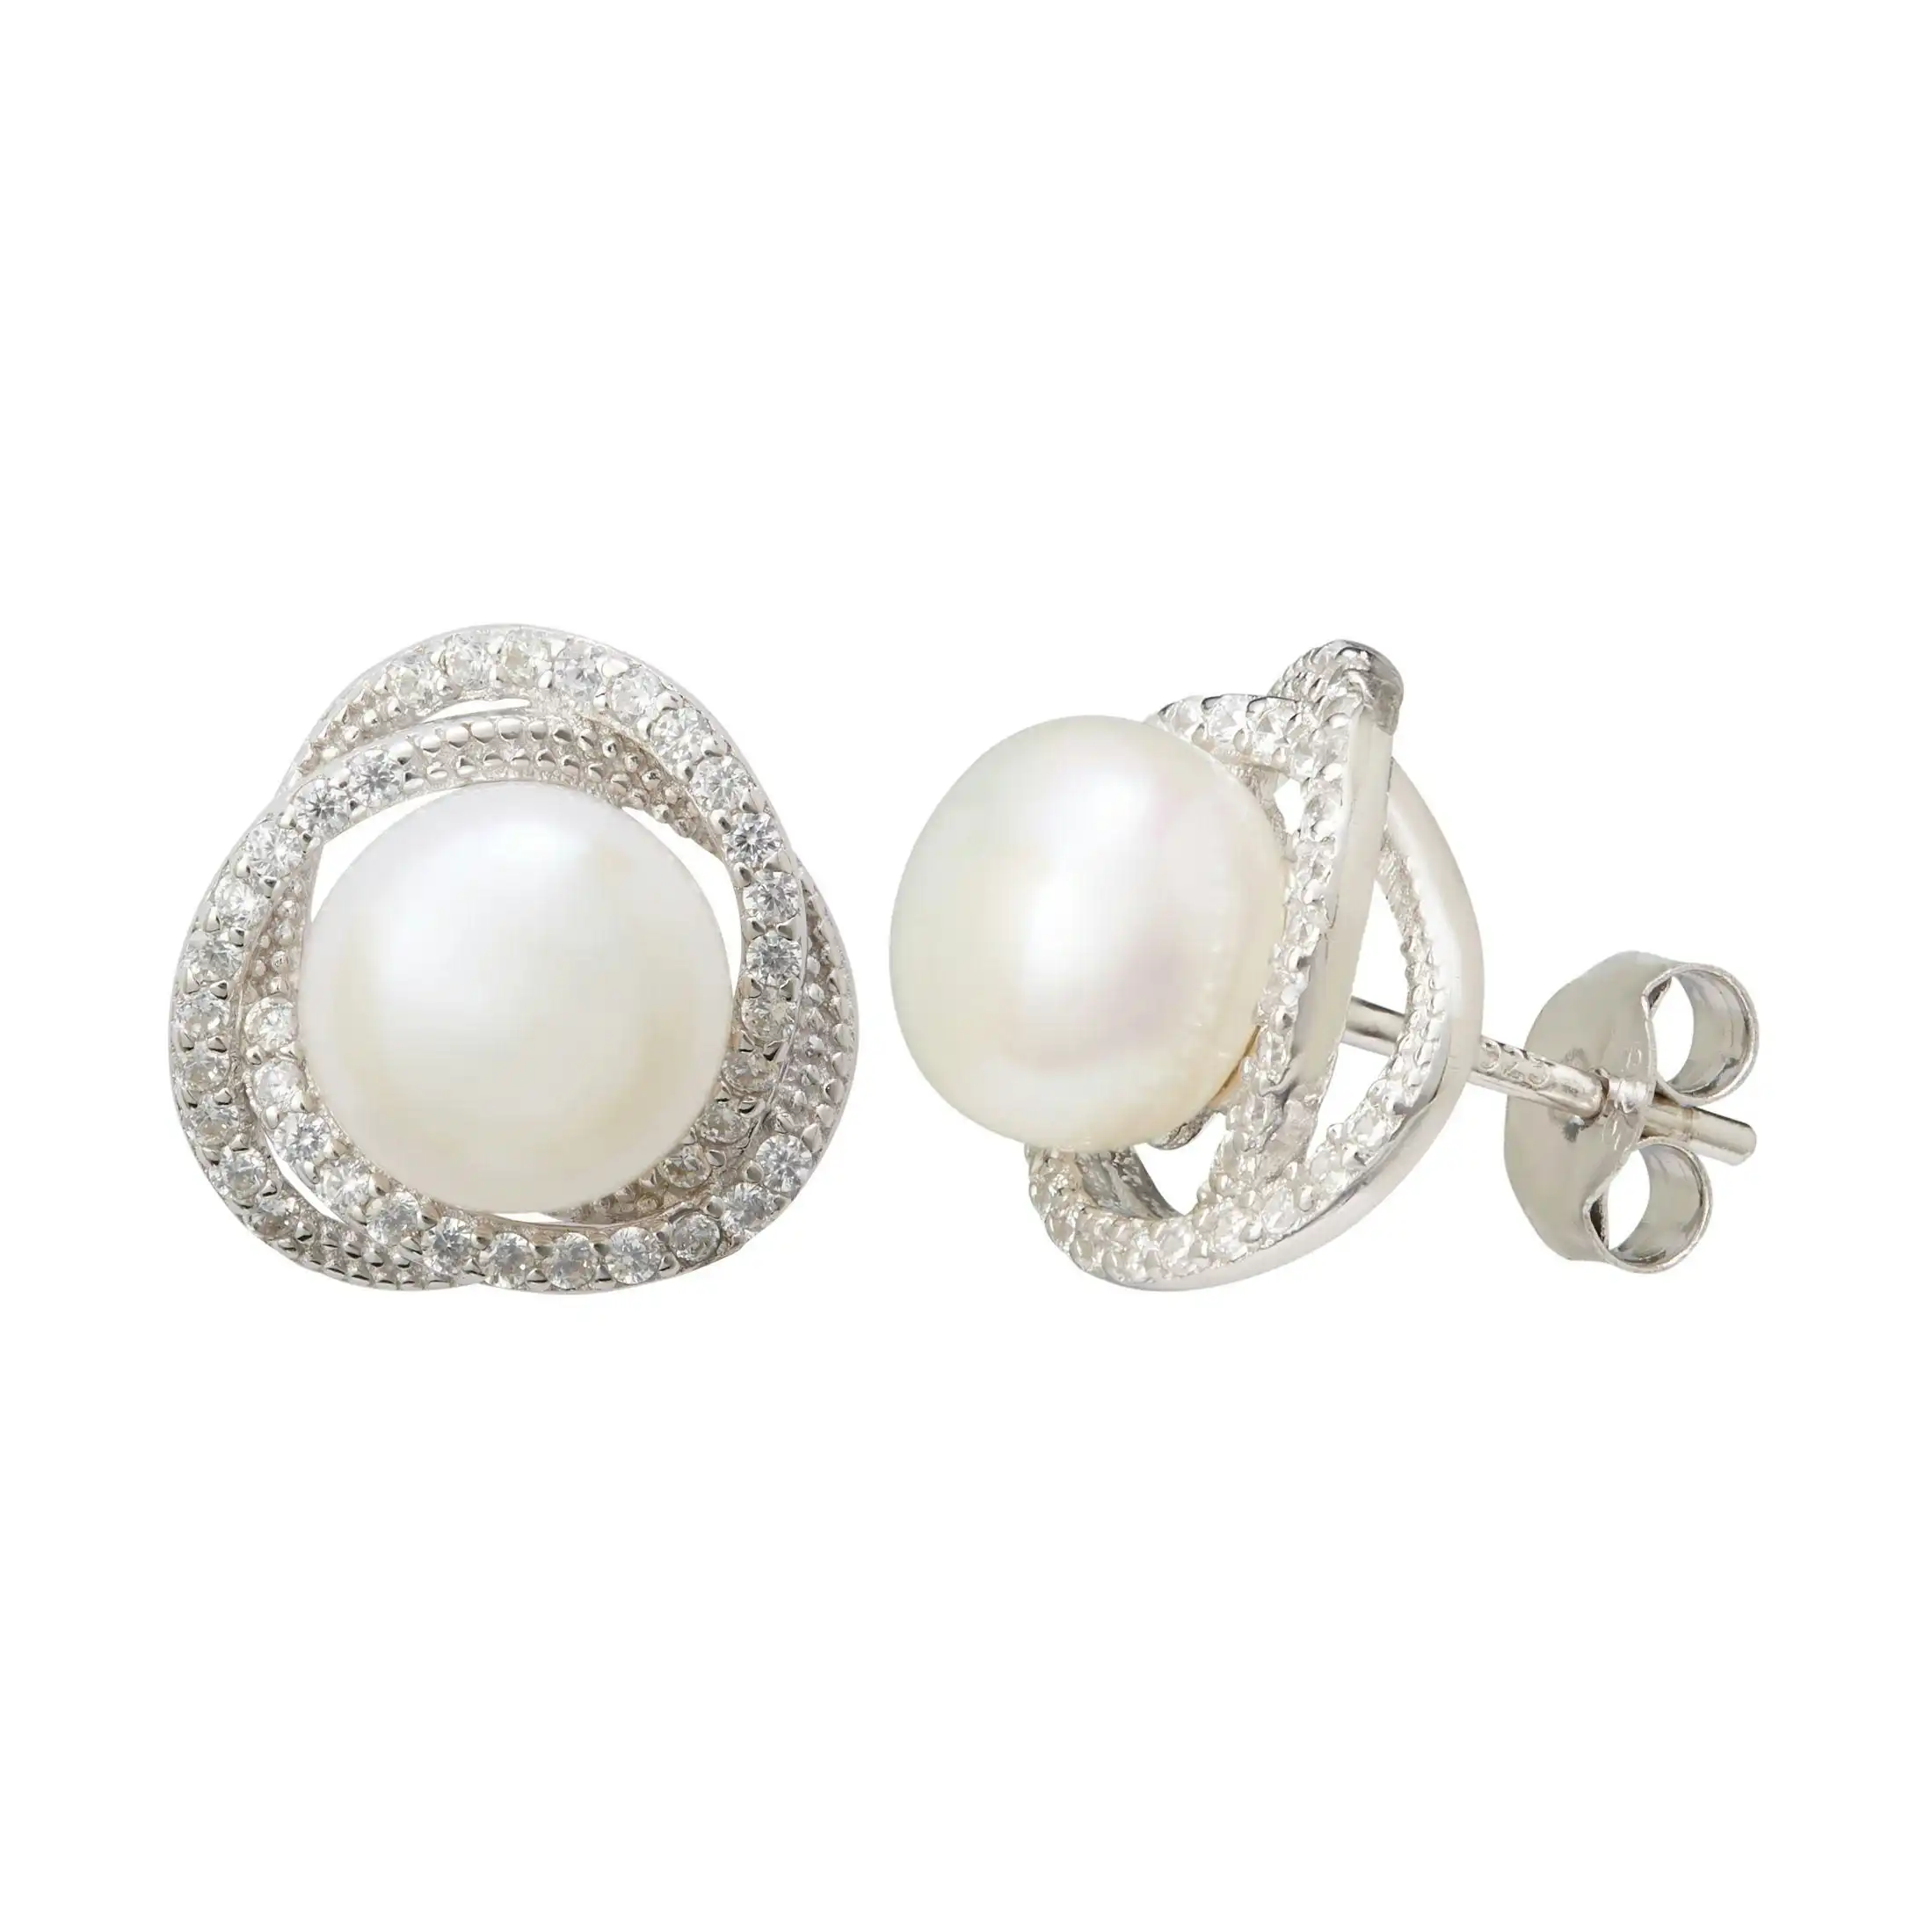 Freshwater Pearl & Cubic Zirconia Halo Swirl Earrings in Sterling Silver